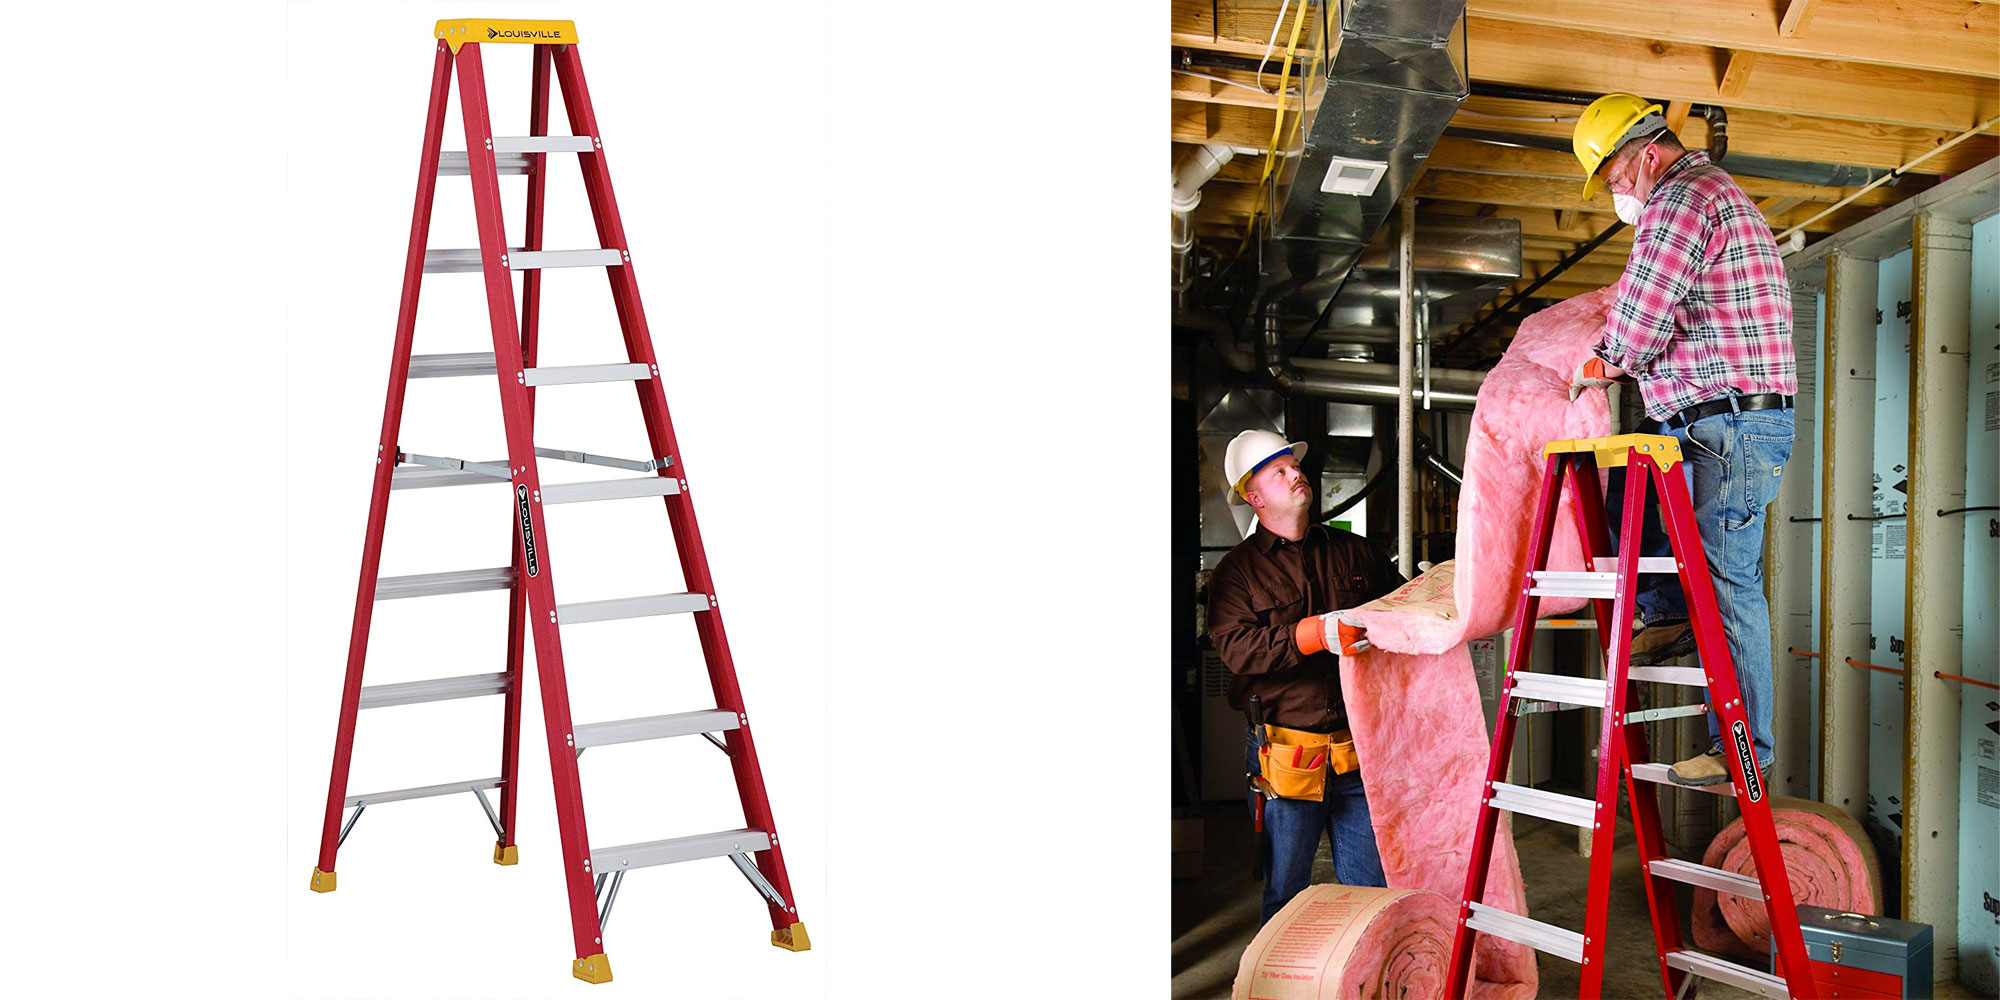 Louisville Ladder L-3016-08 300-Pound Duty Rating Fiberglass Stepladder,  8-Feet